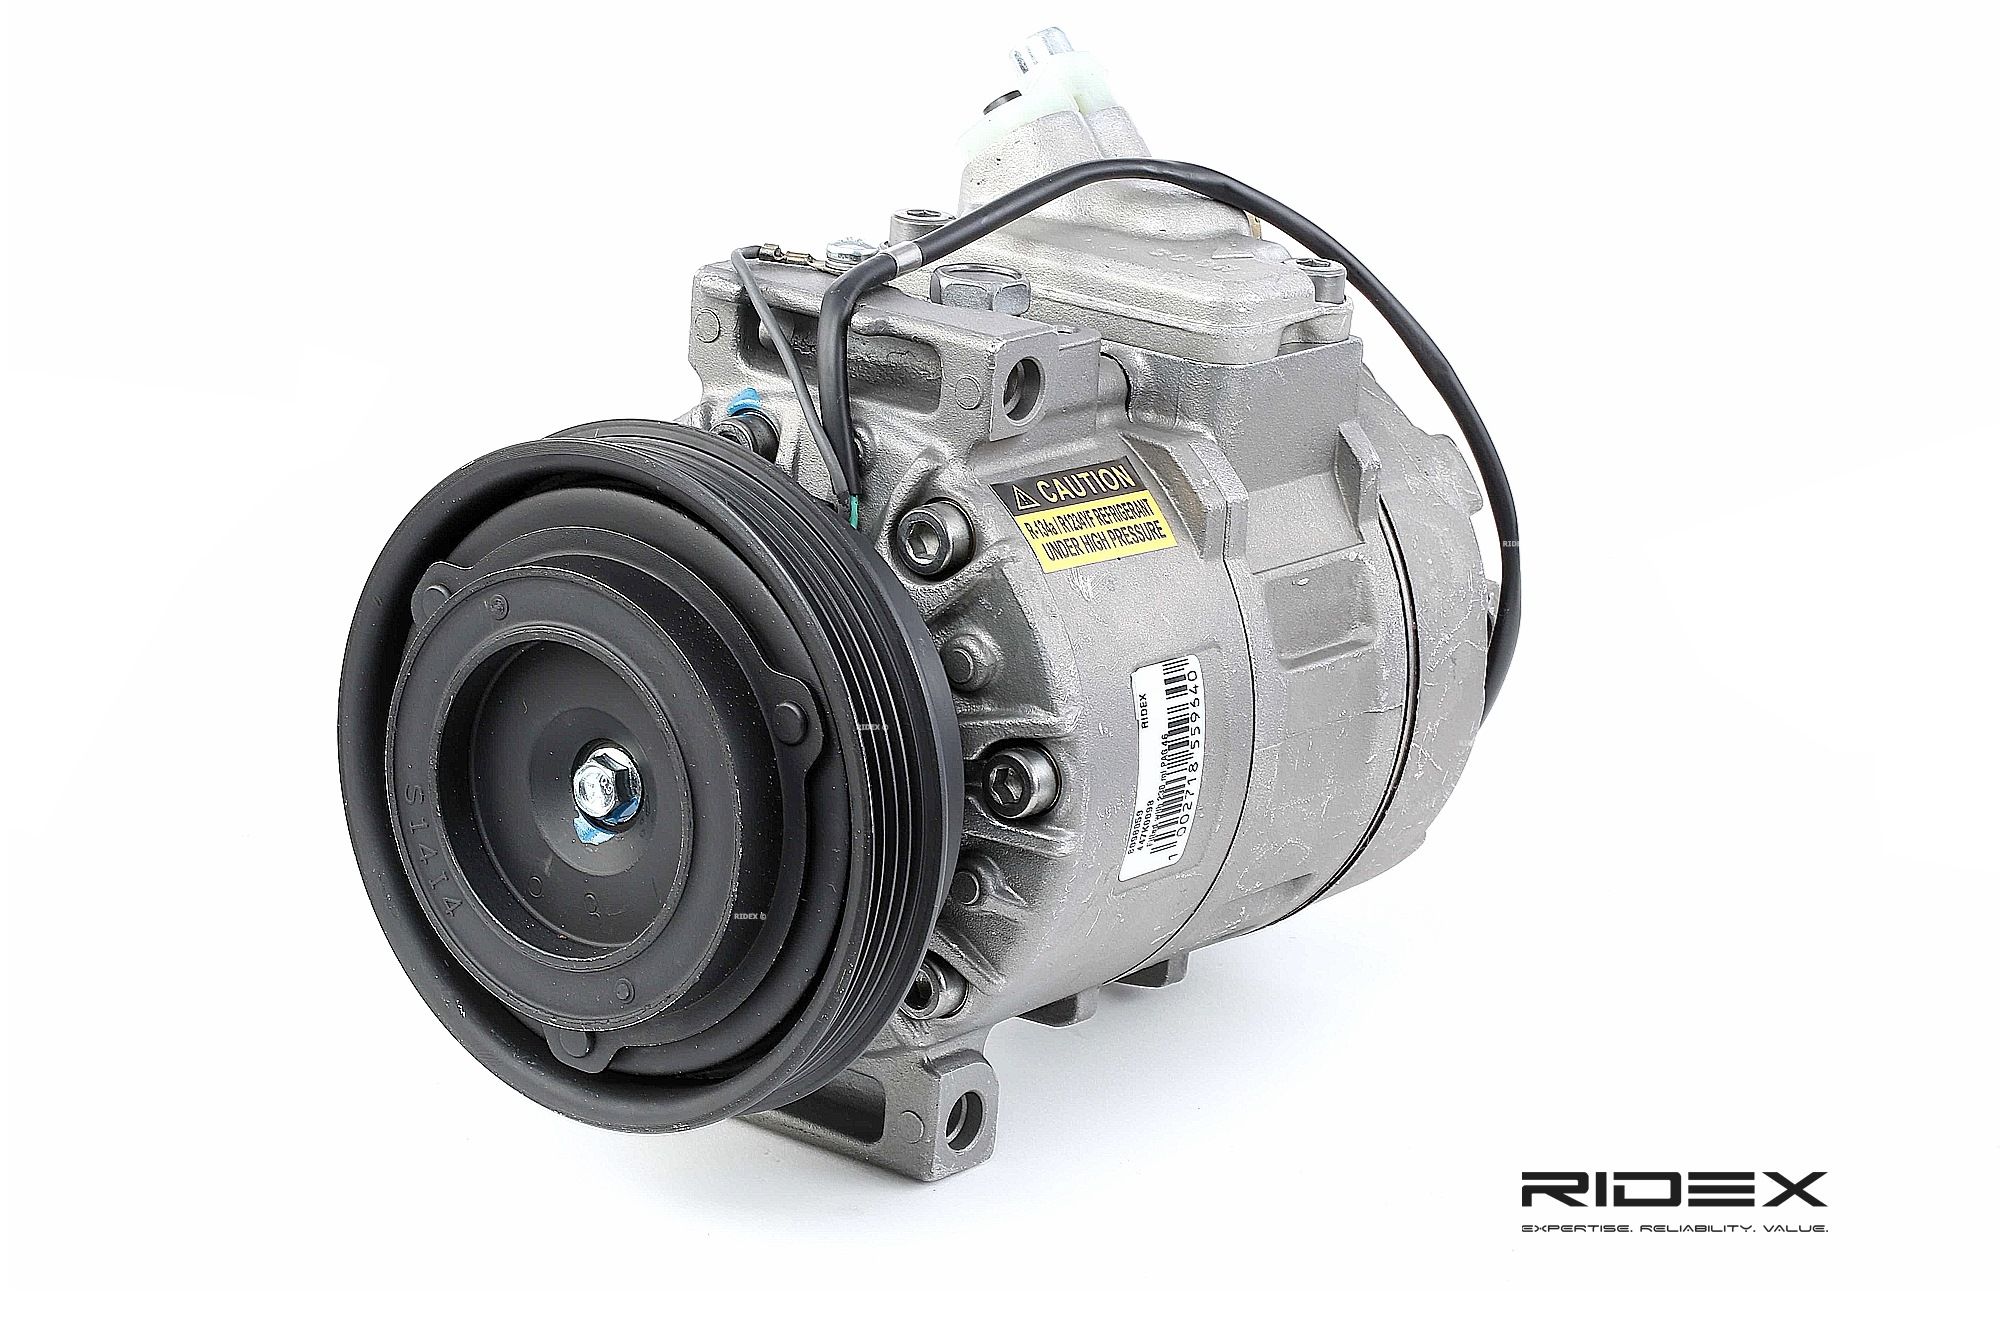 RIDEX 447K0098 original VW Luftkonditioneringskompressor 7SBU16C, PAG 46, R 134a, med PAG.kompressorolja